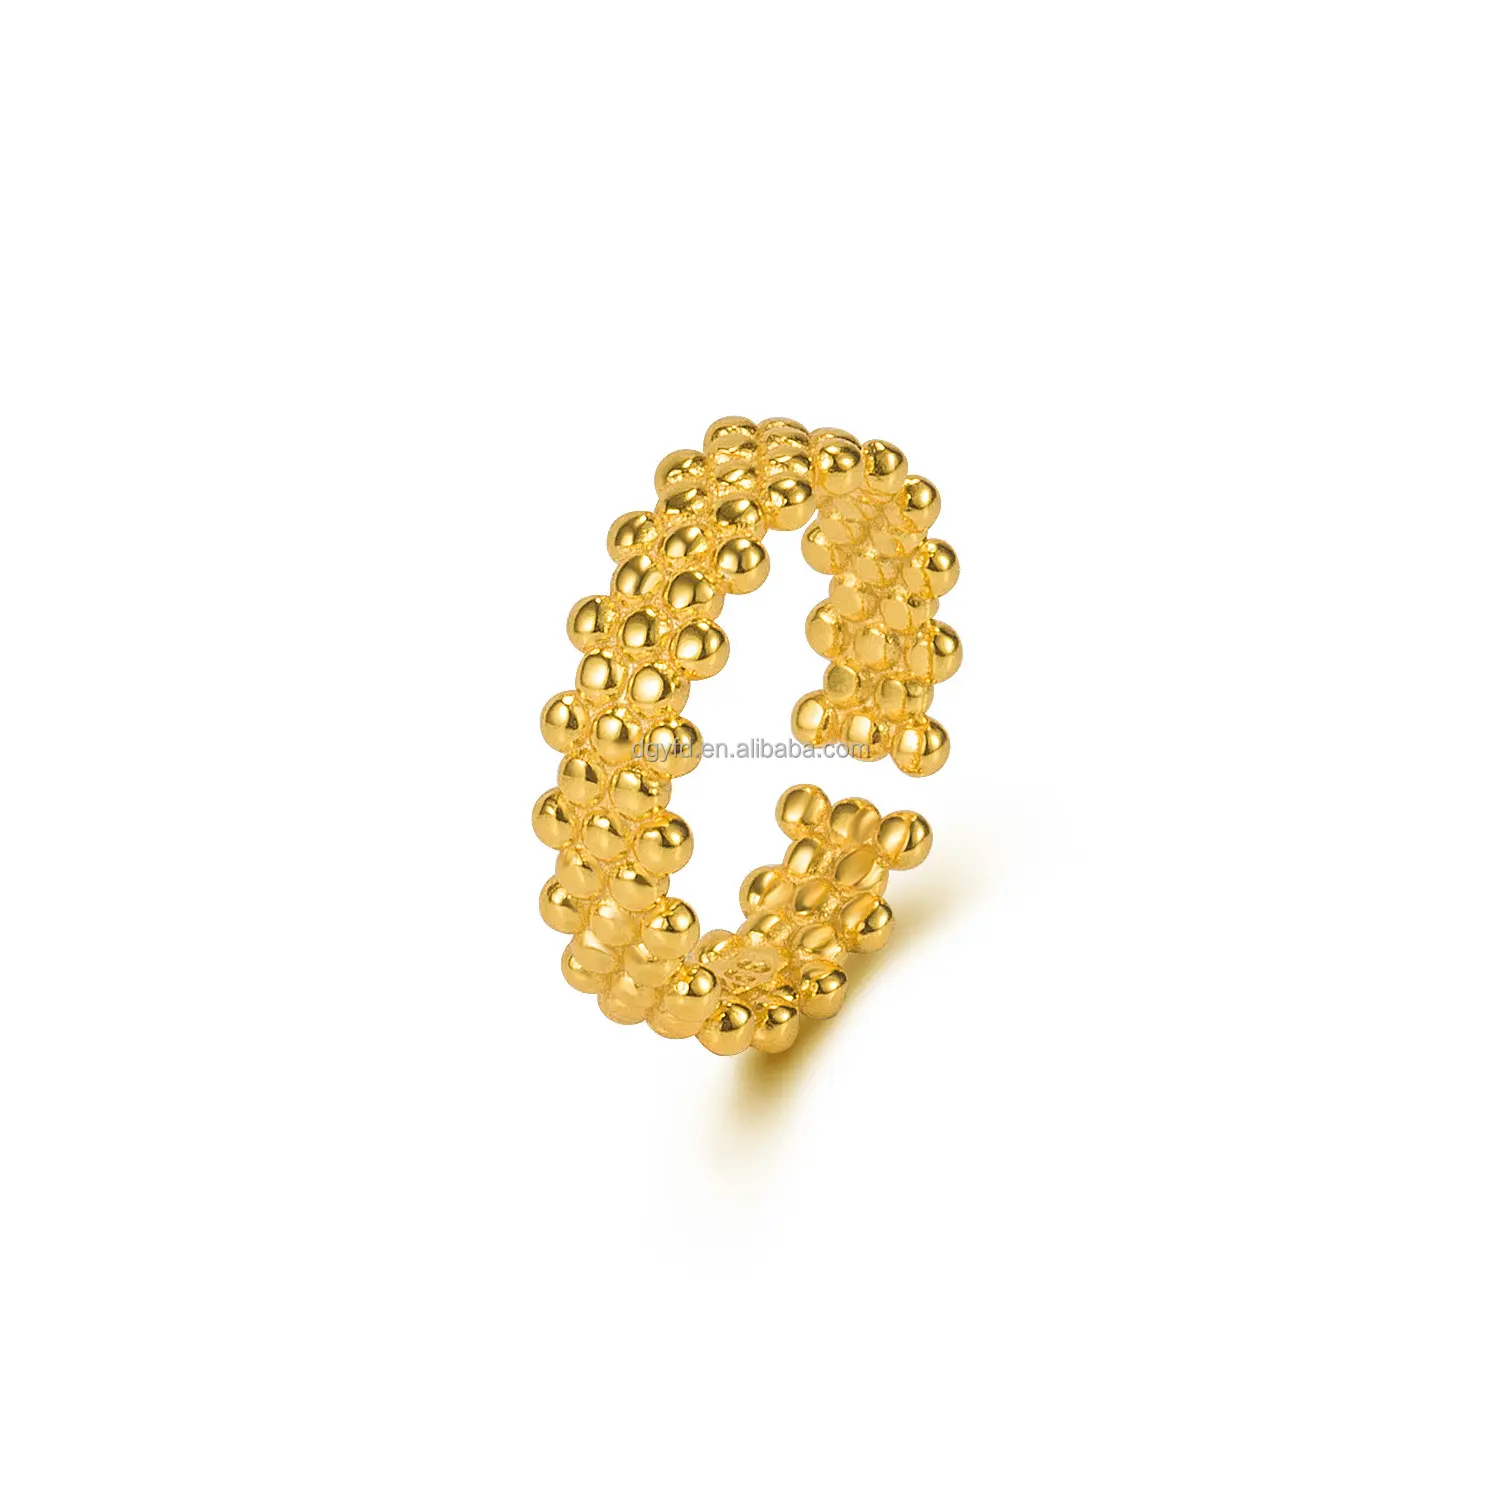 Personalizado 925 plata esterlina 18K oro rodio mujeres joyería de moda anillos abiertos 3 capas anillos de cuentas